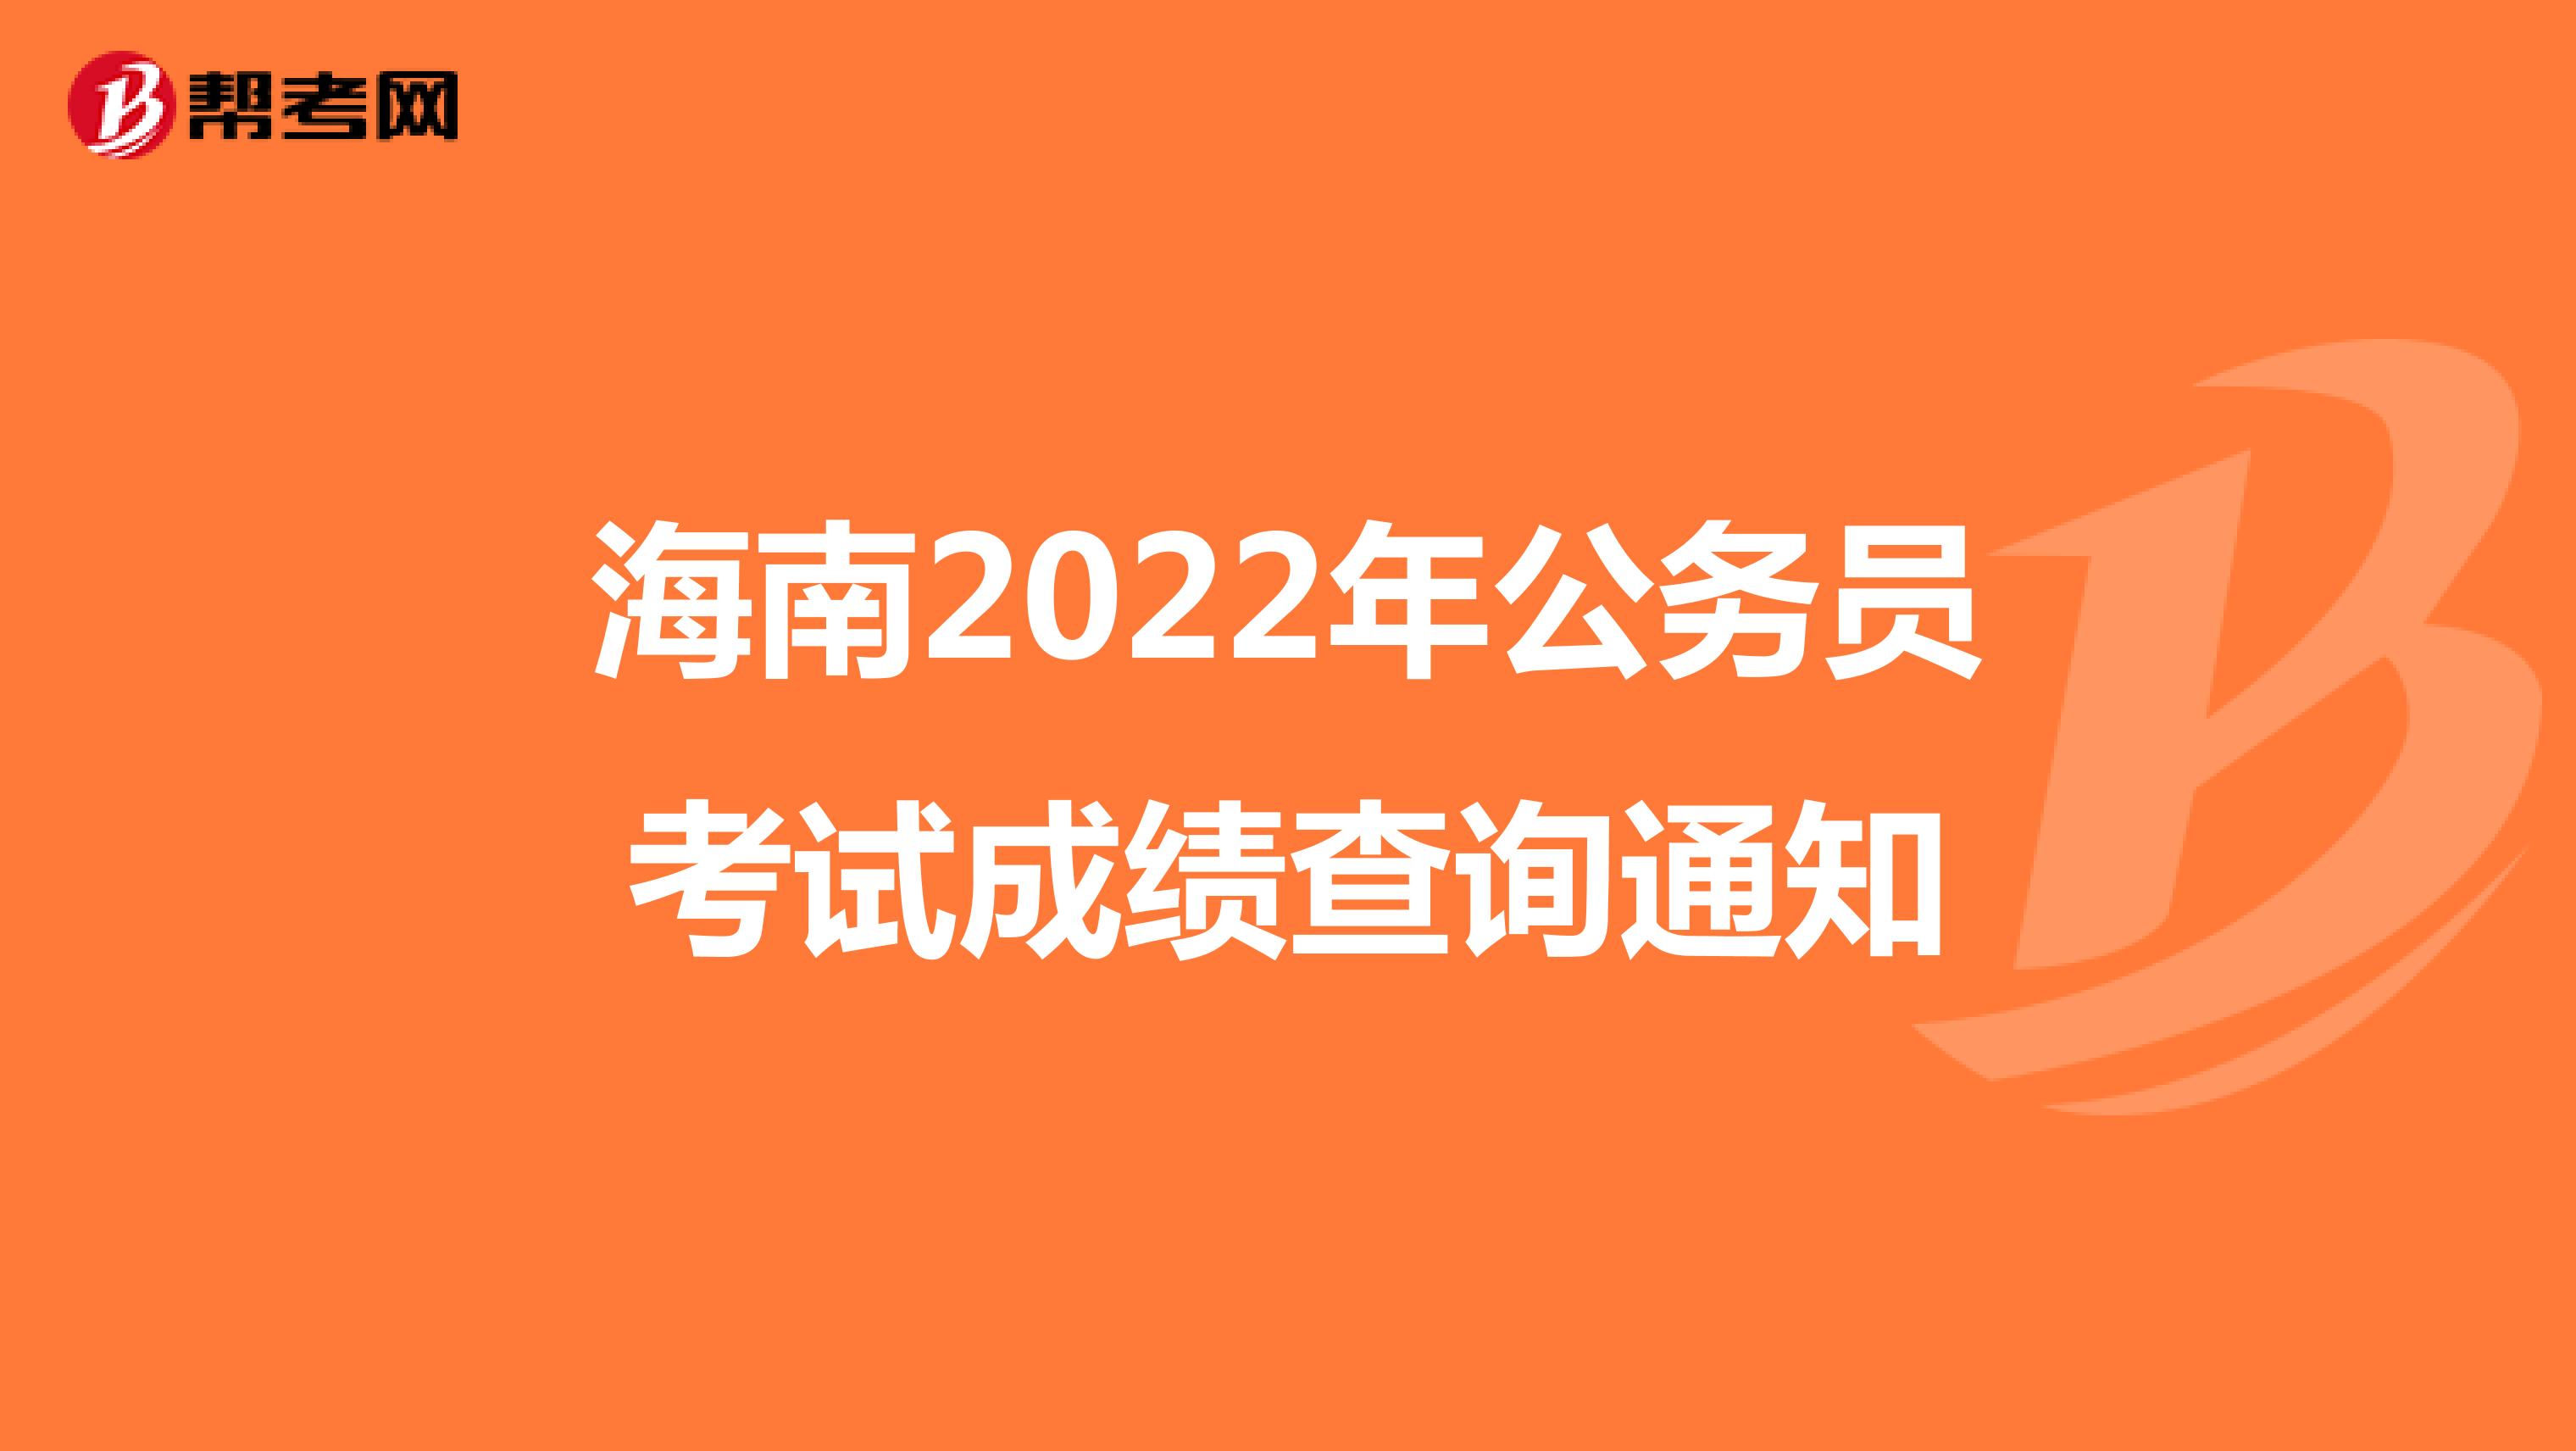 海南2022年公务员考试成绩查询通知